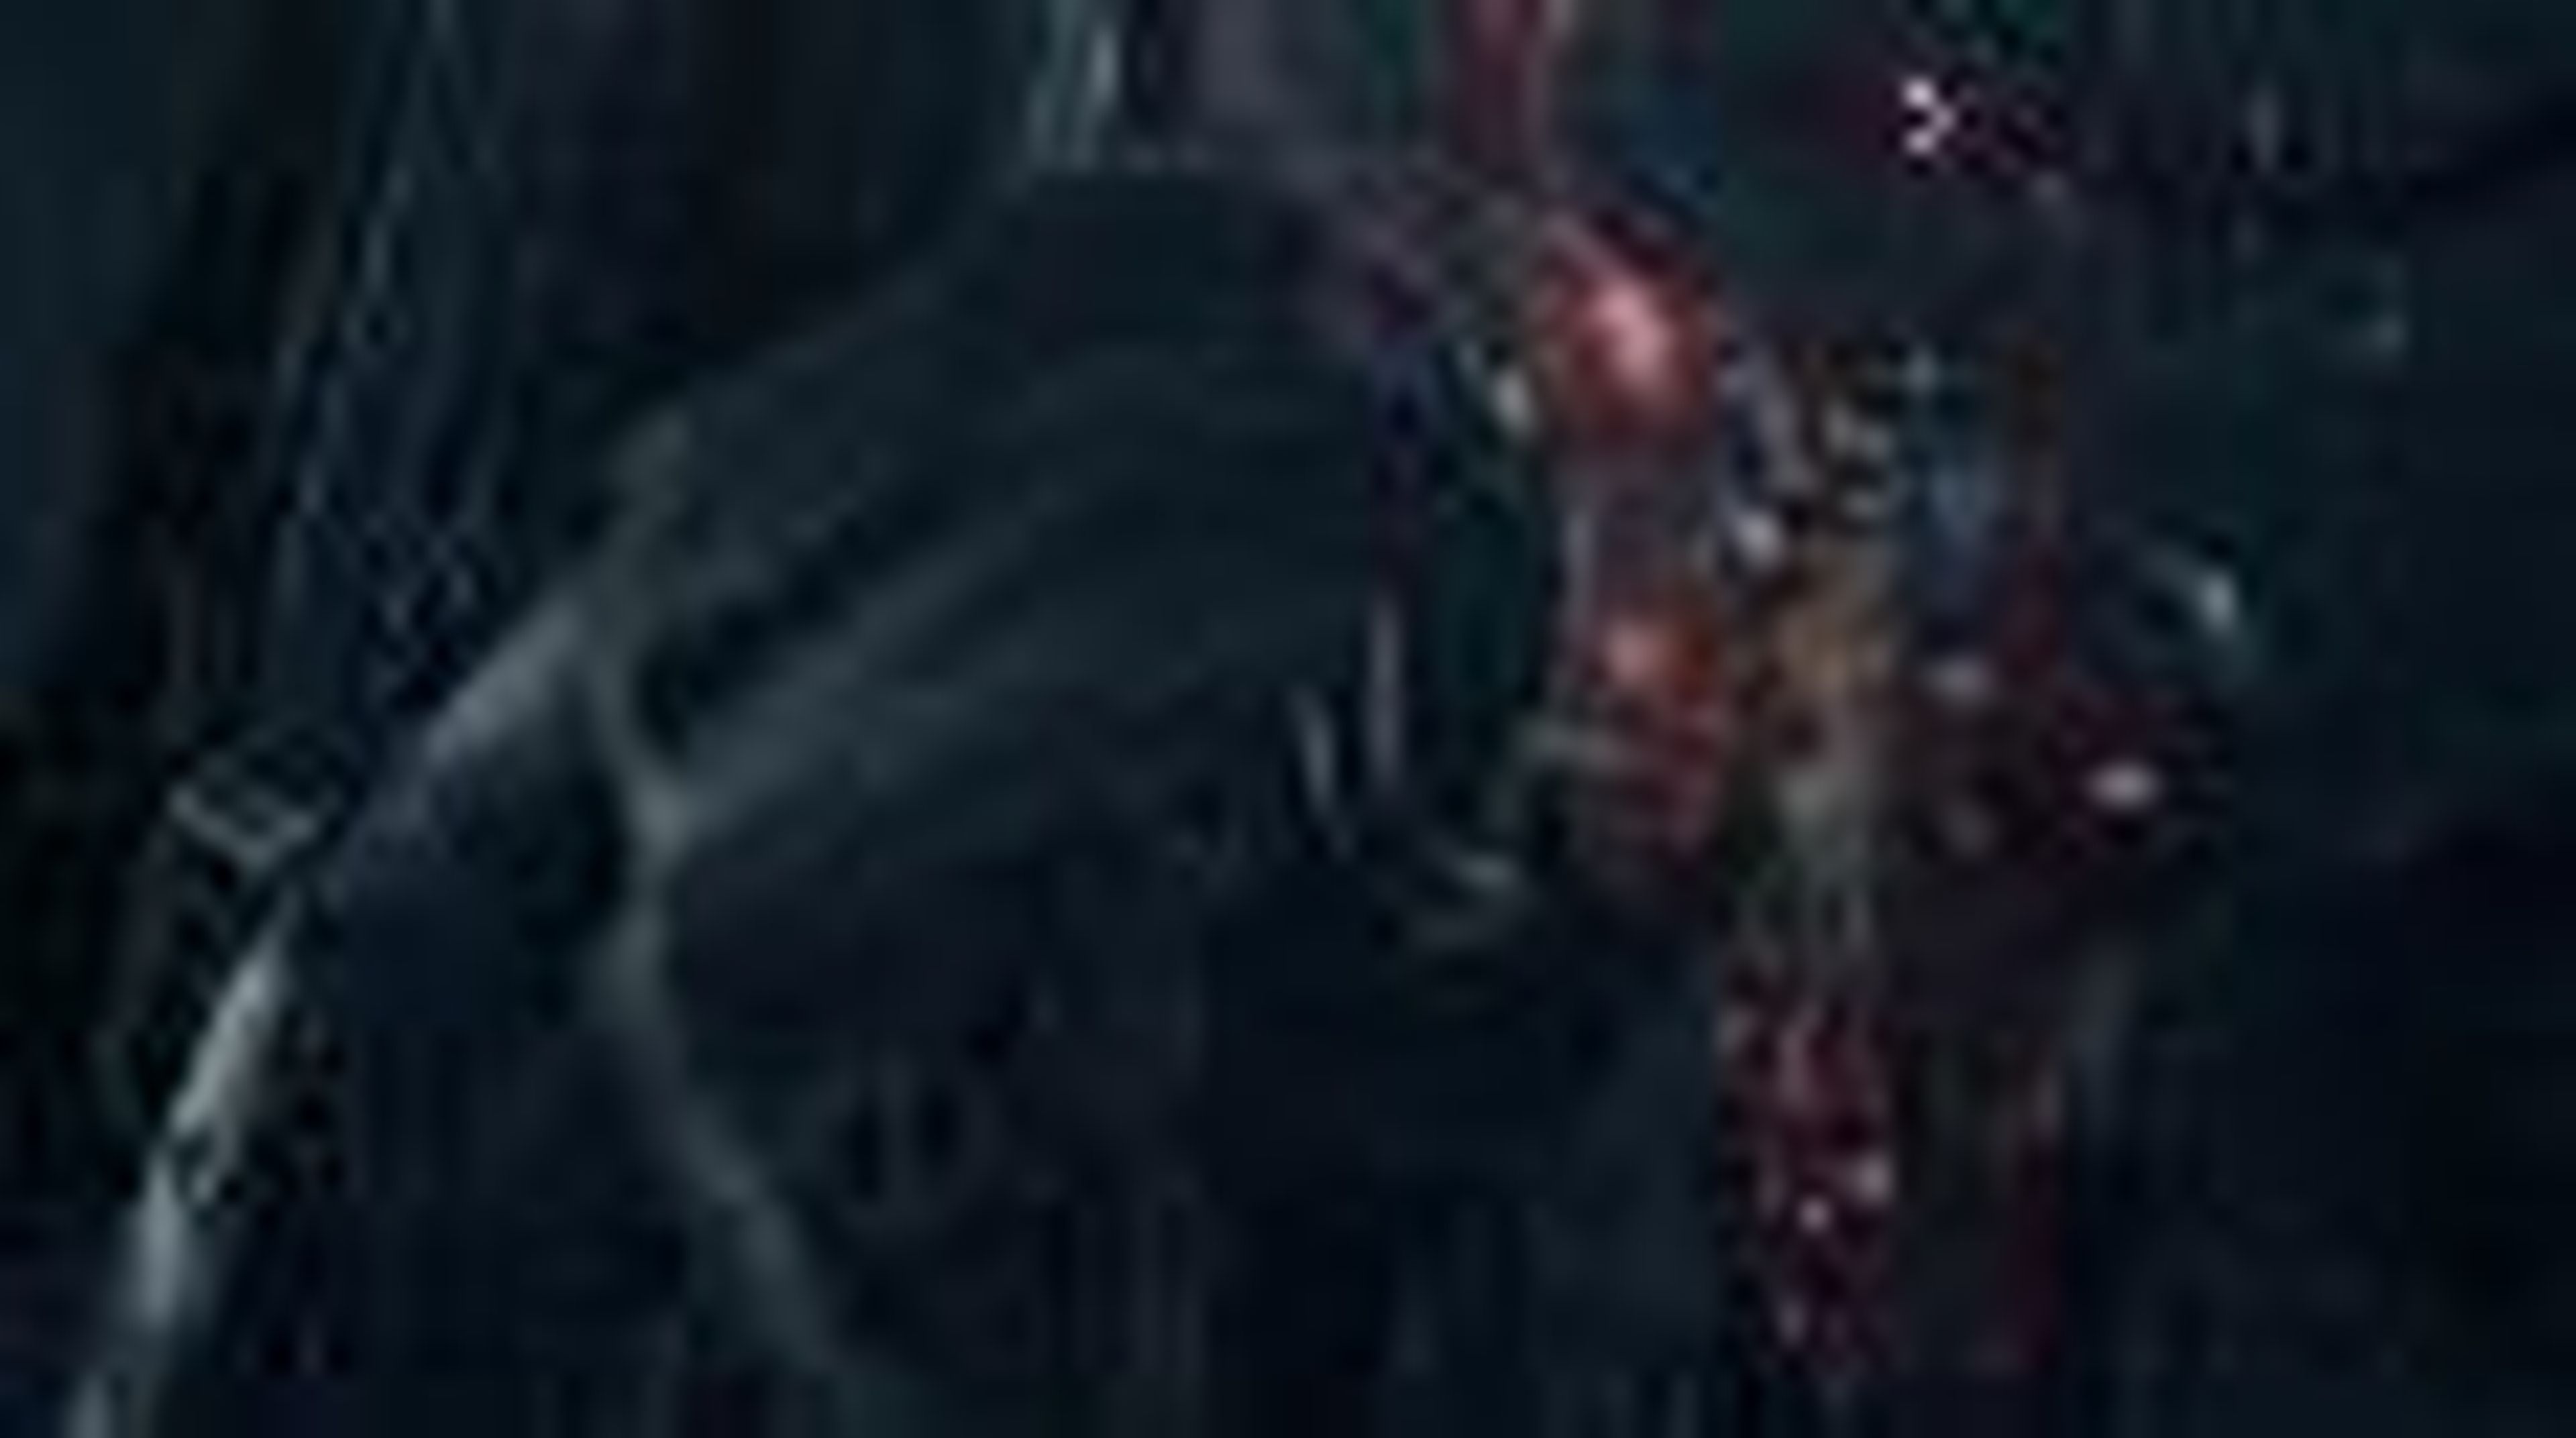 Bloodborne Gameplay Trailer (PS4) (HD)